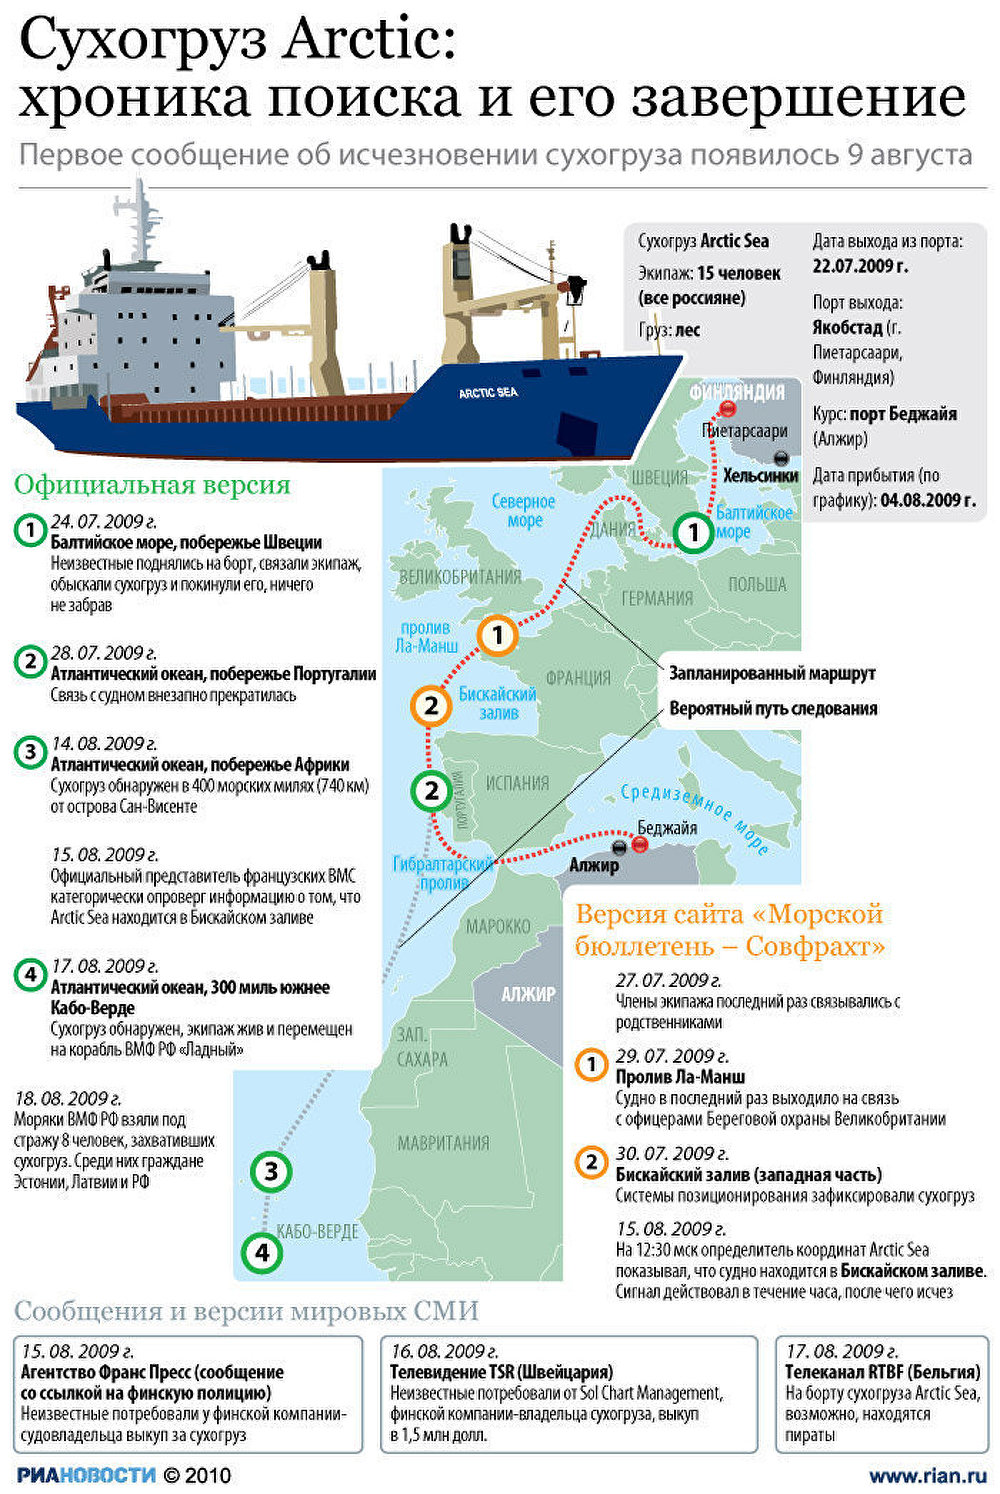 Сухогруз Arctic Sea: хроника поиска и его завершение